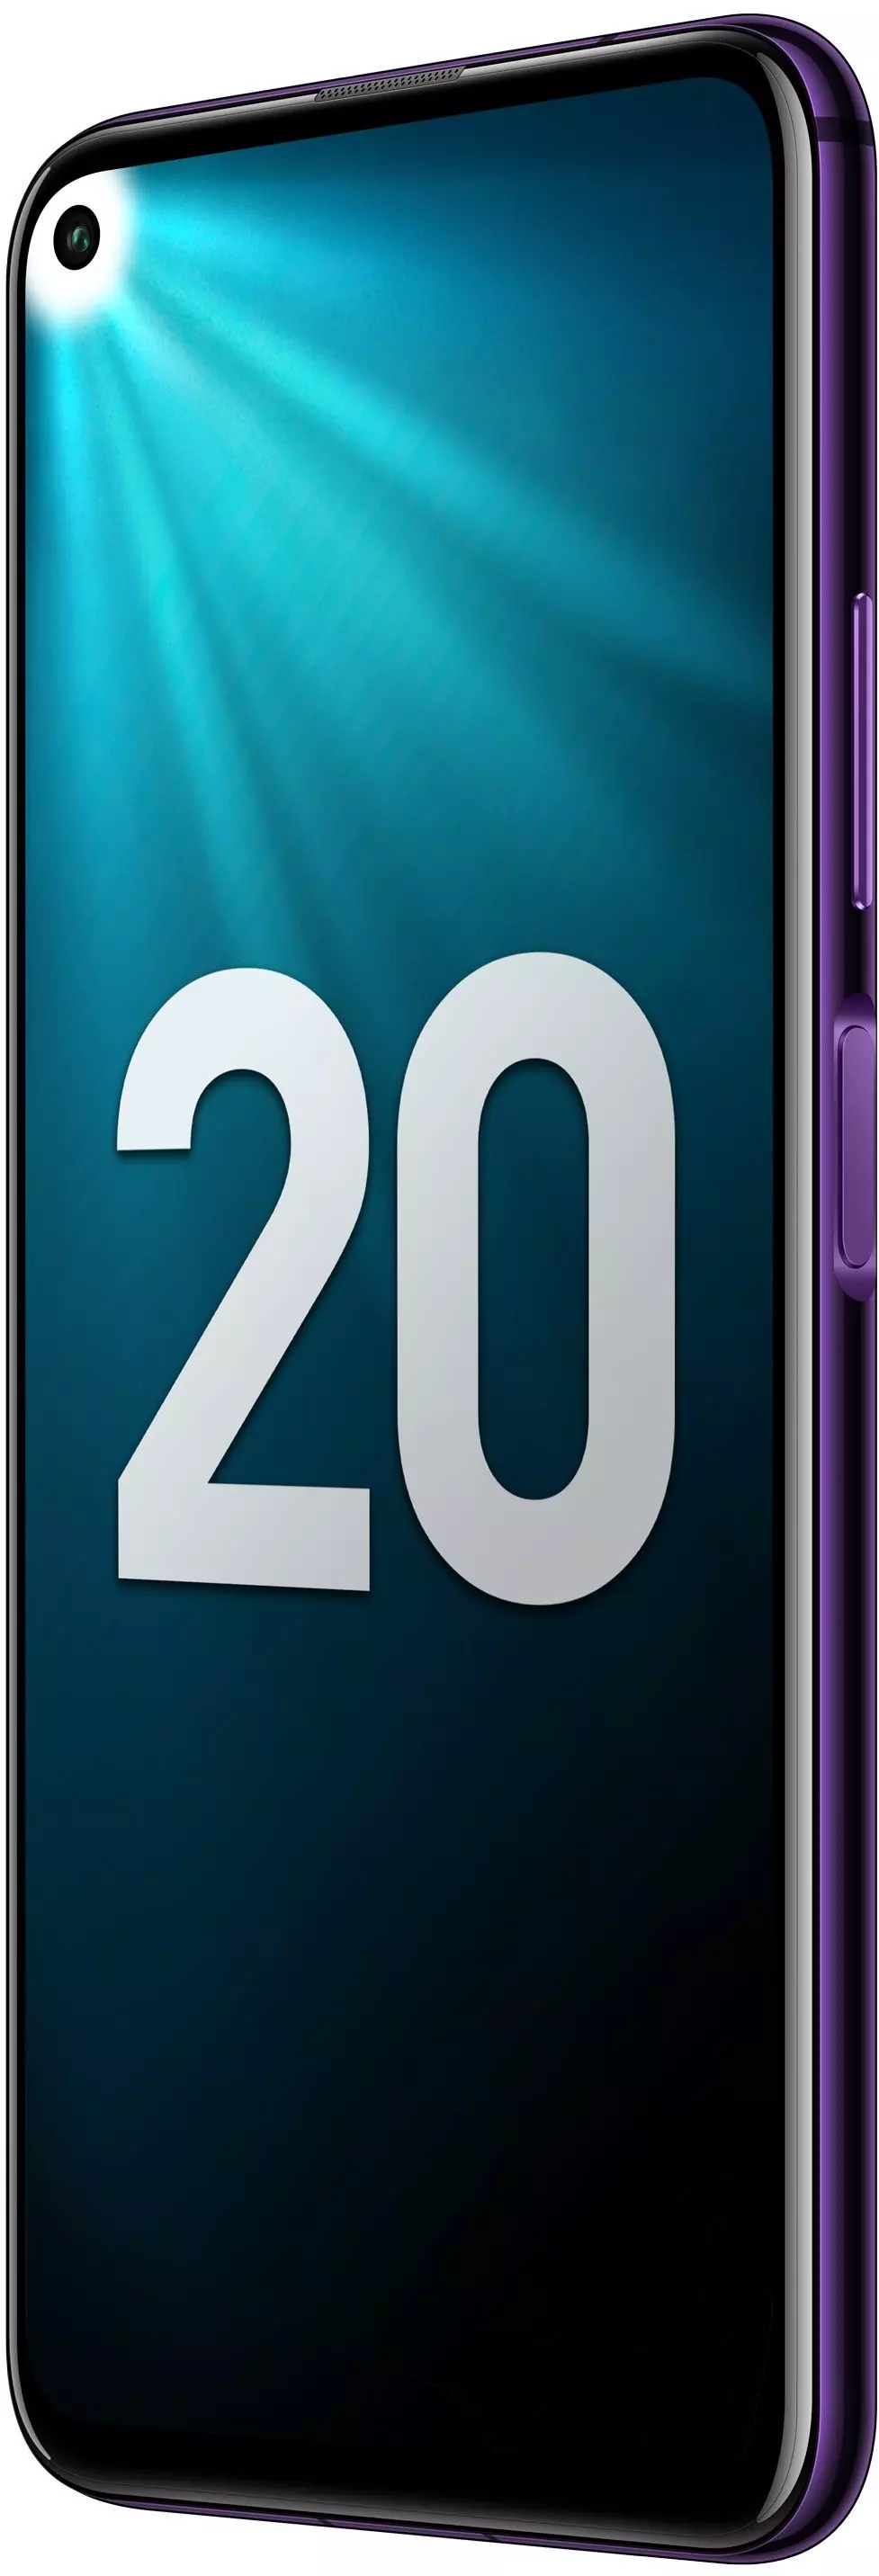 Смартфон Honor 20 Pro 8/256 ГБ Фиолетовый в Челябинске купить по недорогим ценам с доставкой